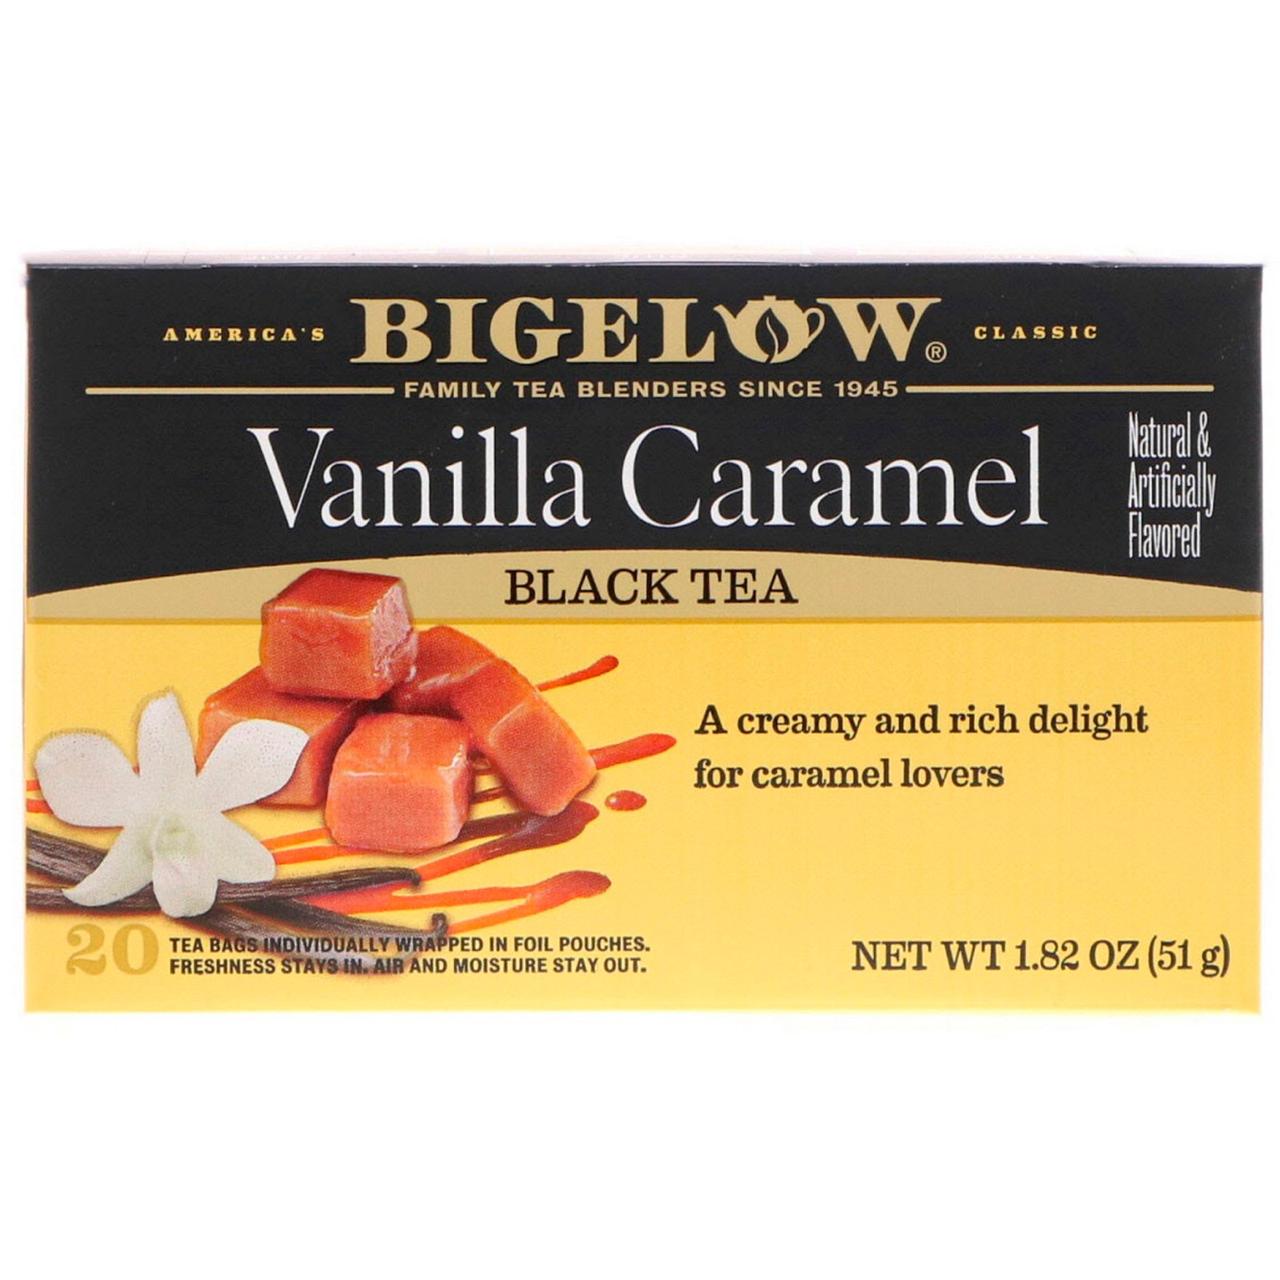 Чай с ароматом ванили и карамели, Bigelow, 20 п., 51 г